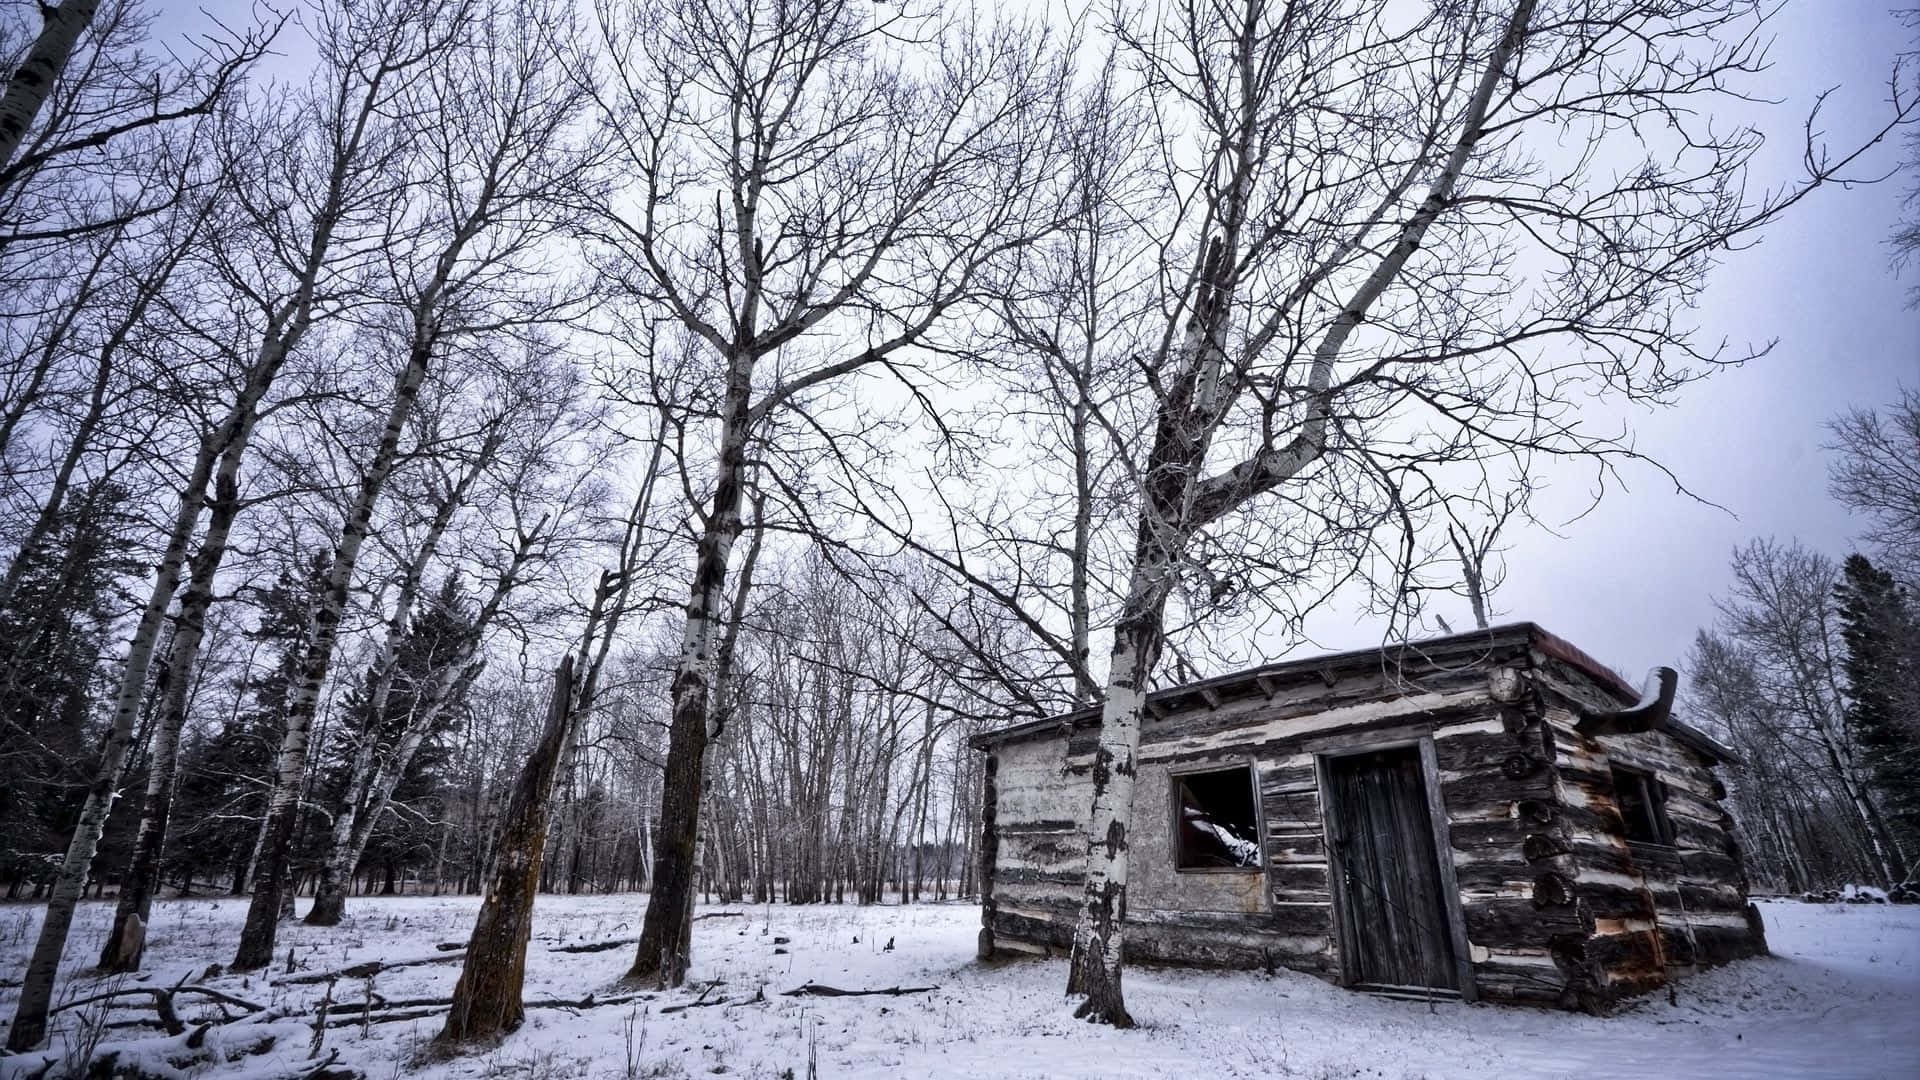 En smuk vinterscene i en gammel russisk landsby. Wallpaper